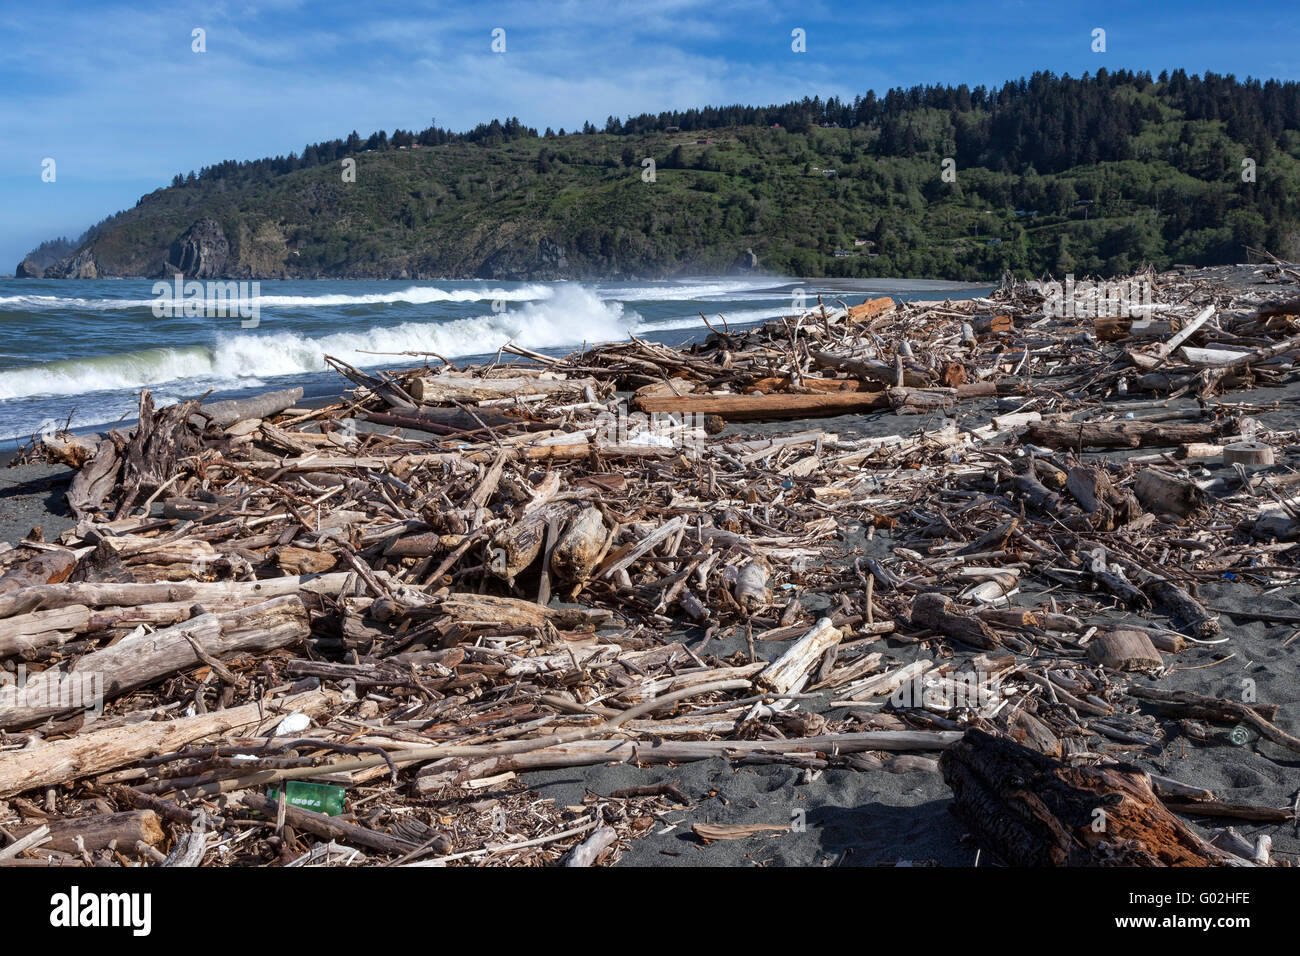 Driftwood et divers déchets, s'accumule sur la plage à l'embouchure de la rivière Klamath dans le Nord de la Californie Banque D'Images